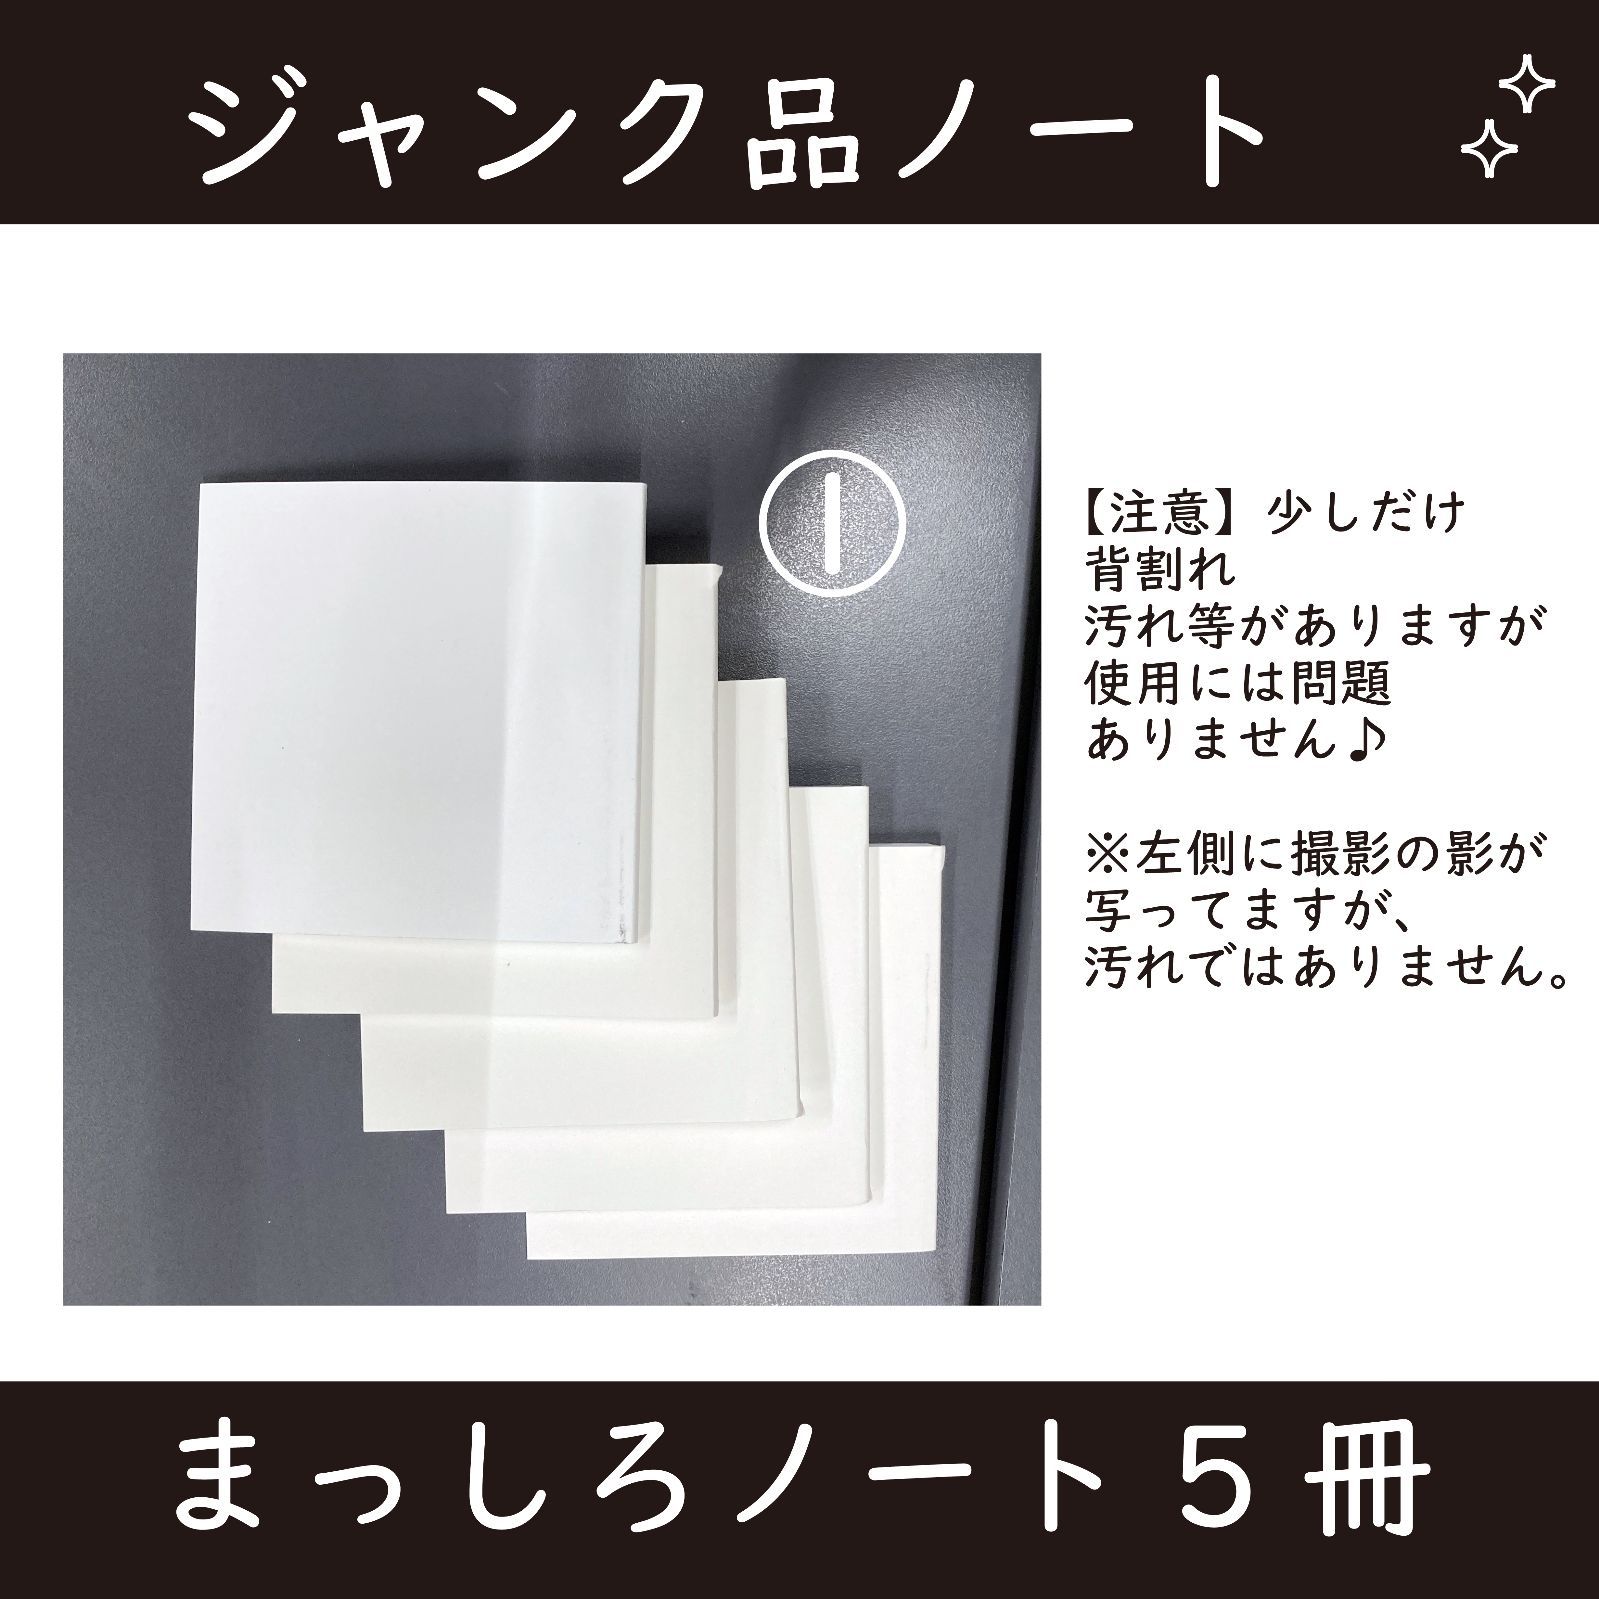 【激安】ジャンク品ノートセット/まっしろノート/クラフトノート